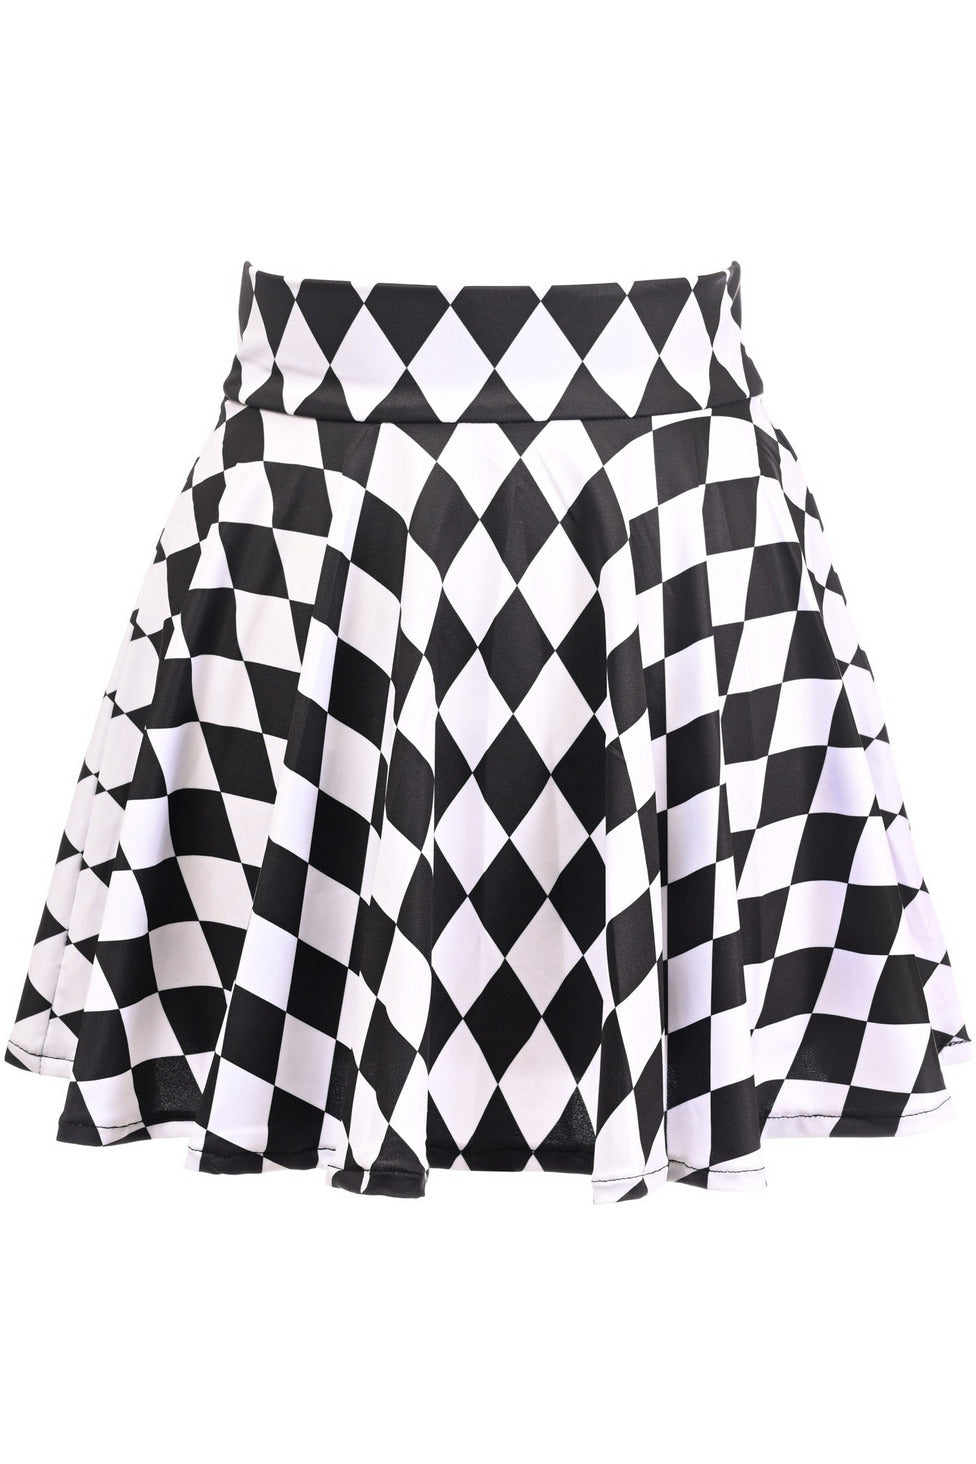 Stretch Lycra Skirt in 4 Styles in Size XS, S, M, L, XL, 2X, 3X, 4X, 5X, or 6X